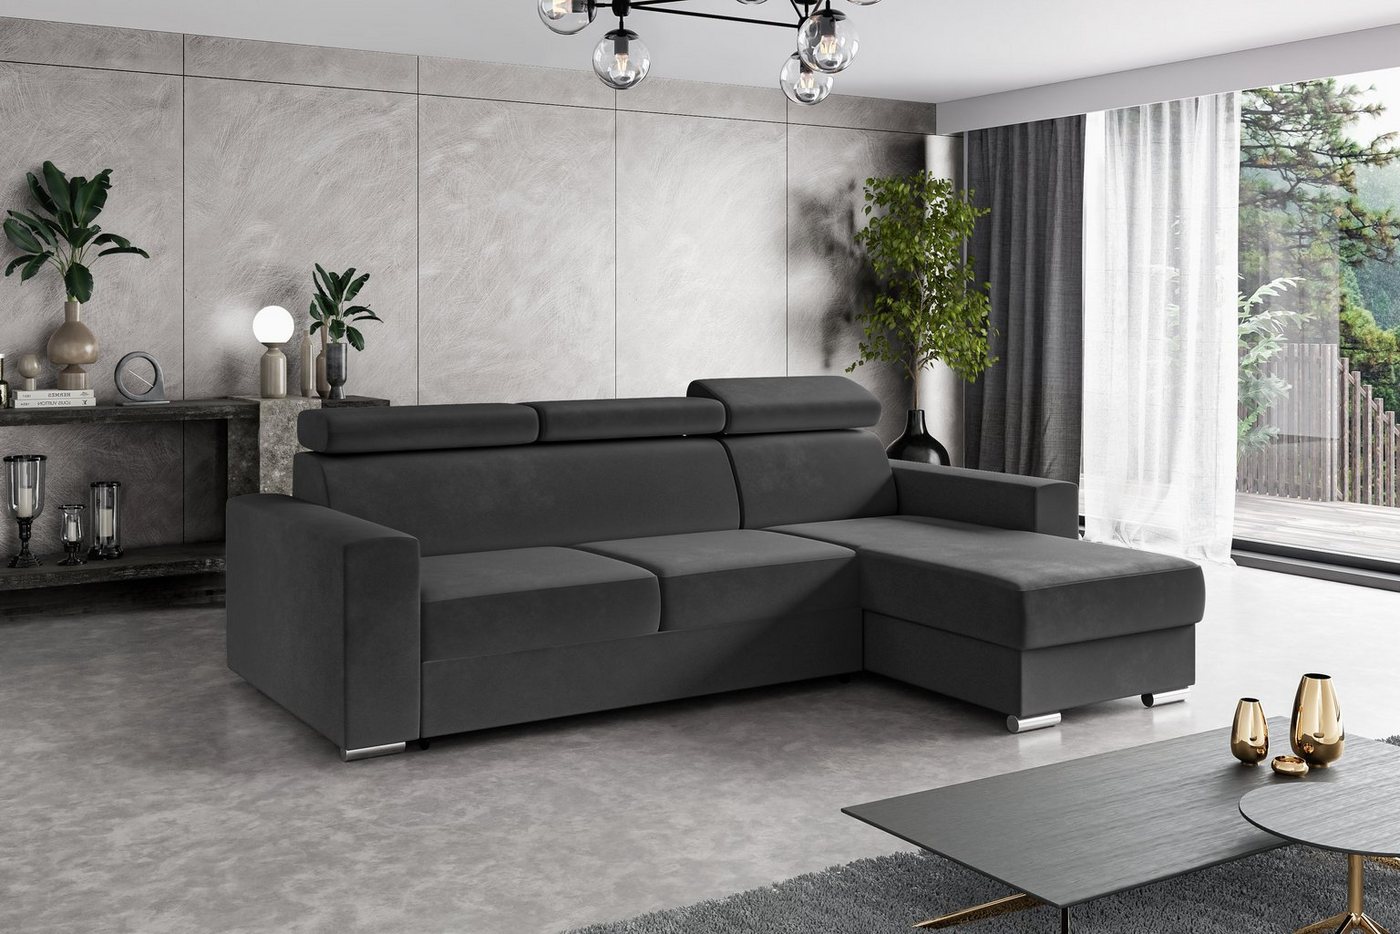 ALTDECOR Ecksofa FIX, Couch mit Schlaffunktion, Wohnzimmer - Wohnlandschaft von ALTDECOR